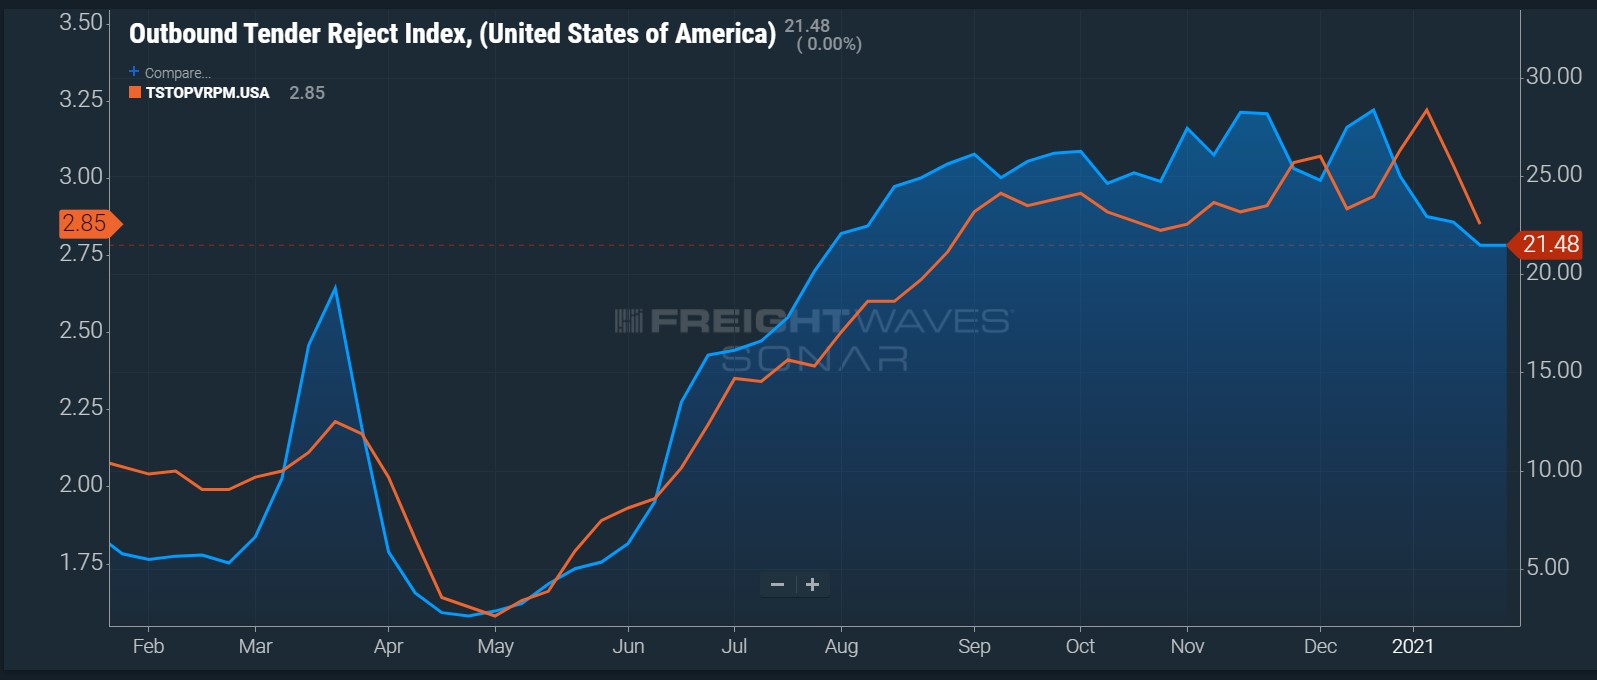 OTRI.USA versus Truckstop Van rate per mile